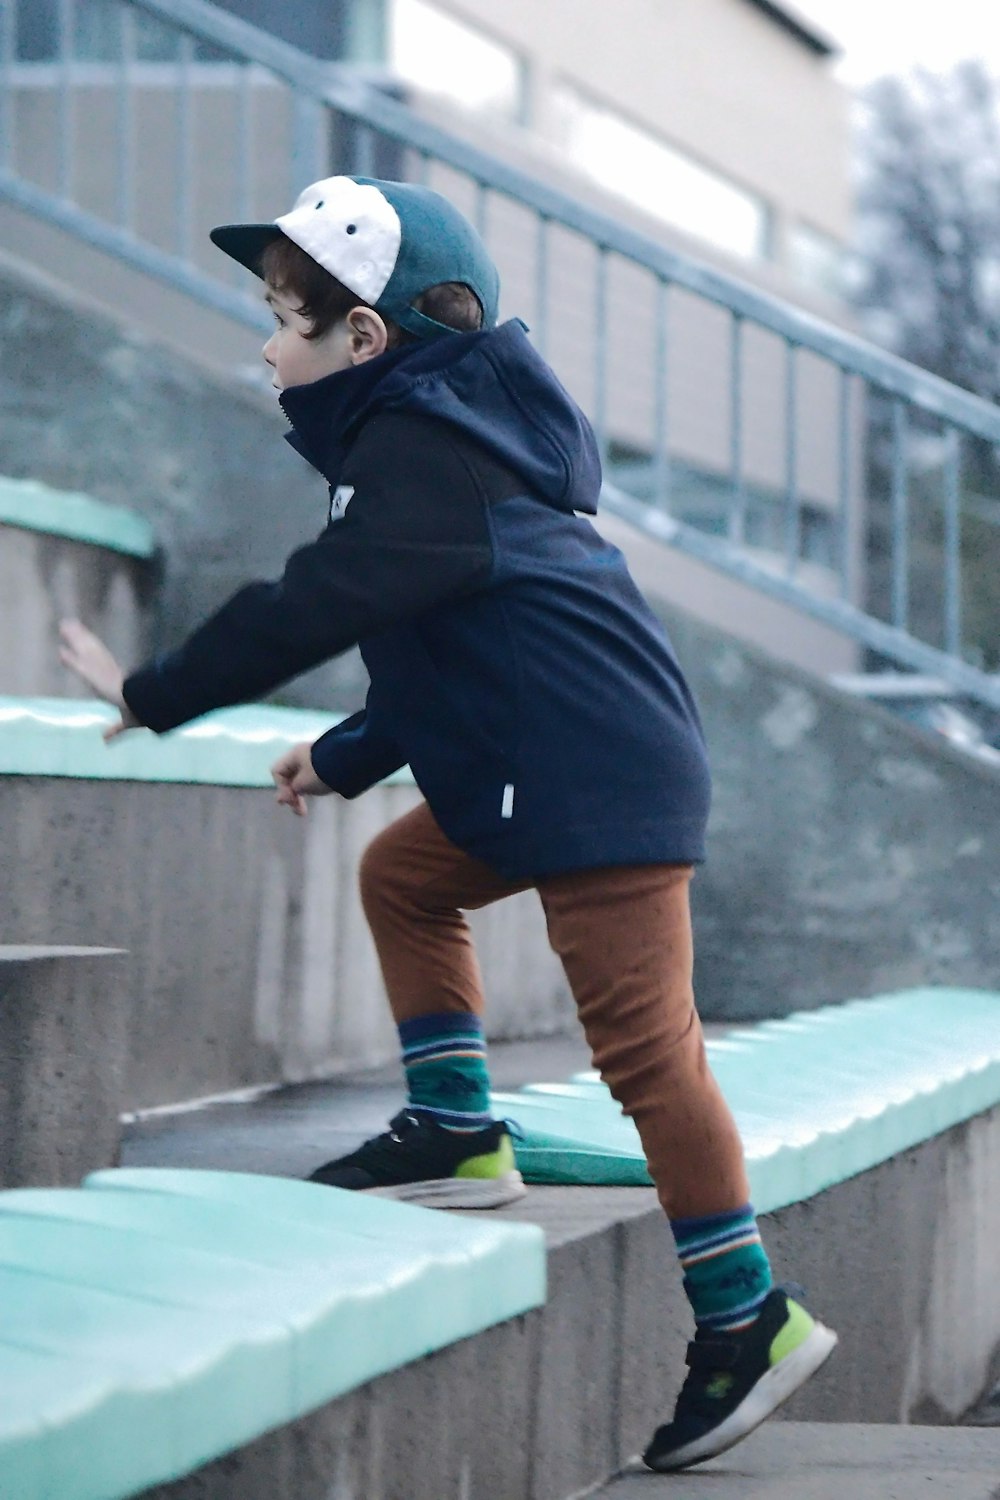 セメントの階段の脇をスケートボードで下る青年